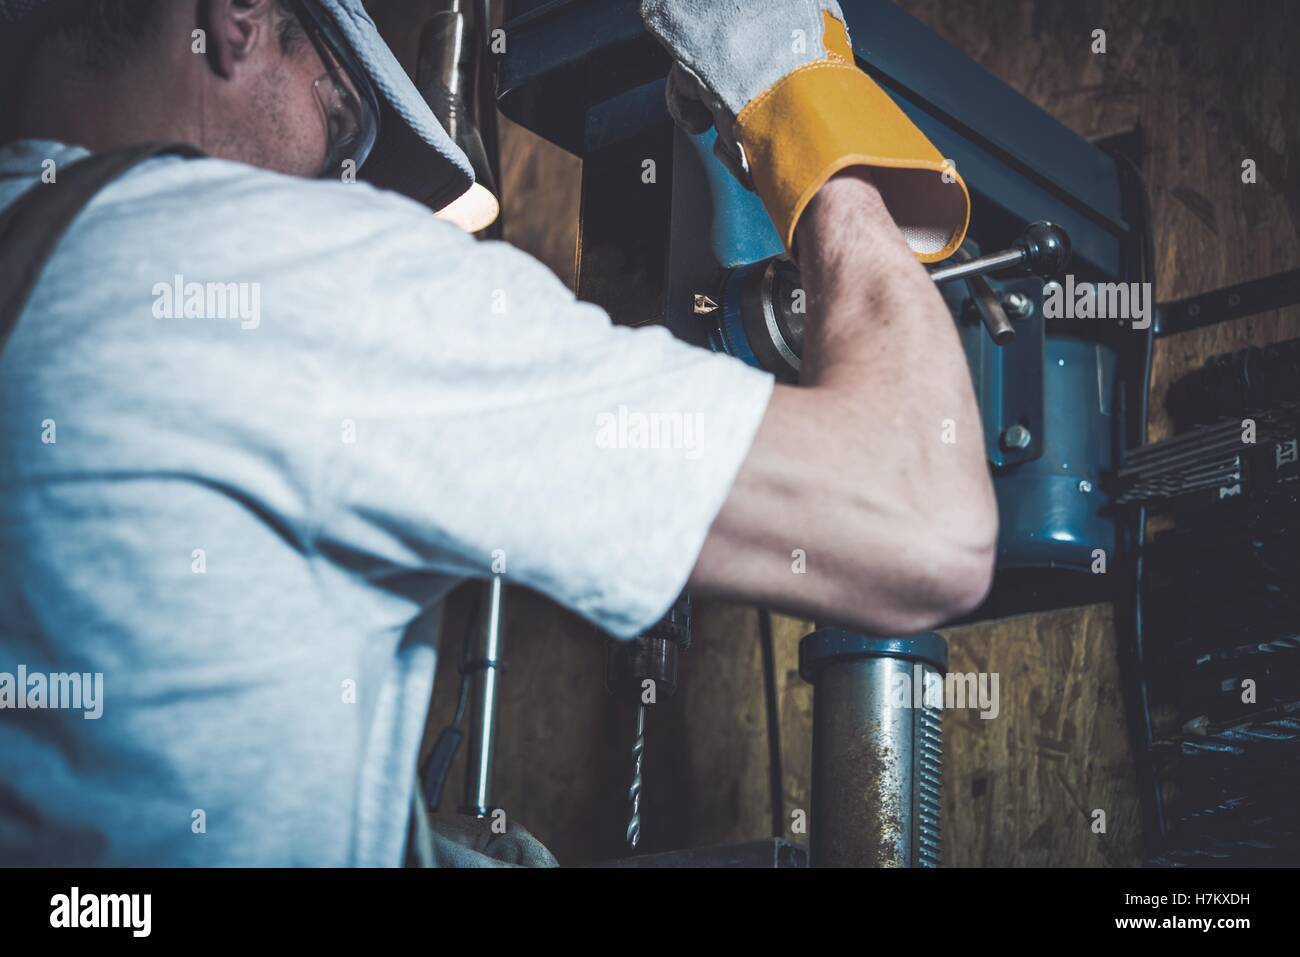 Garaje Obras de metal. Hombres y el taladro de calidad profesional en su garaje. Foto de stock